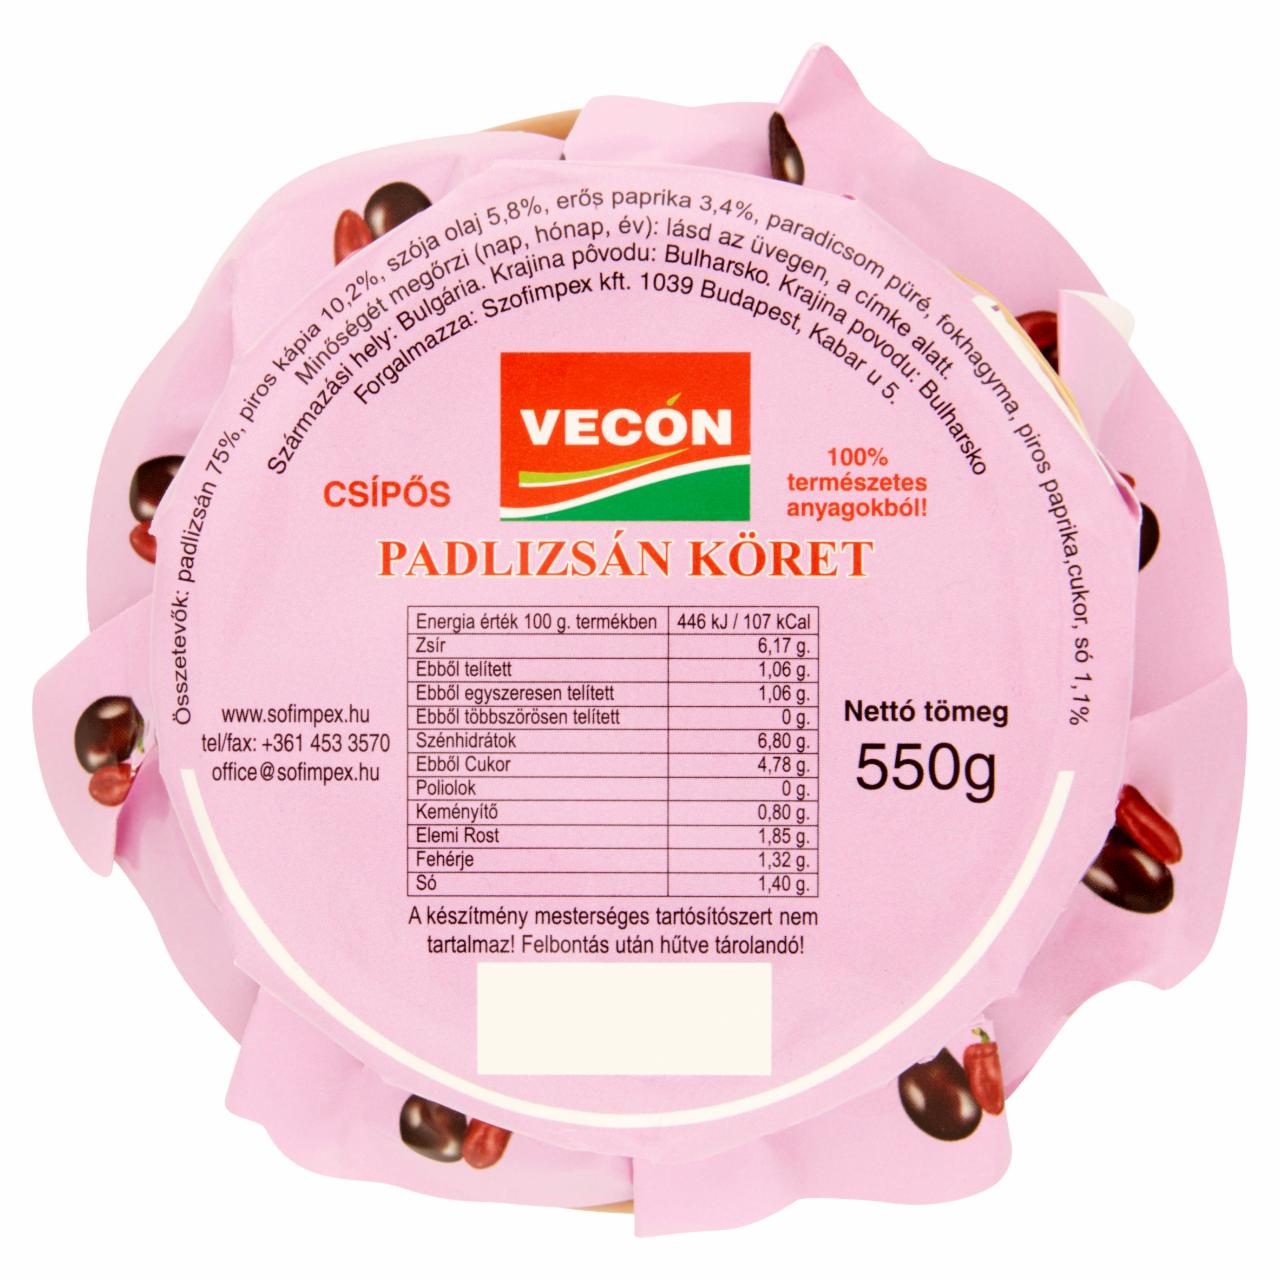 Képek - Vecon csípős padlizsán köret 550 g